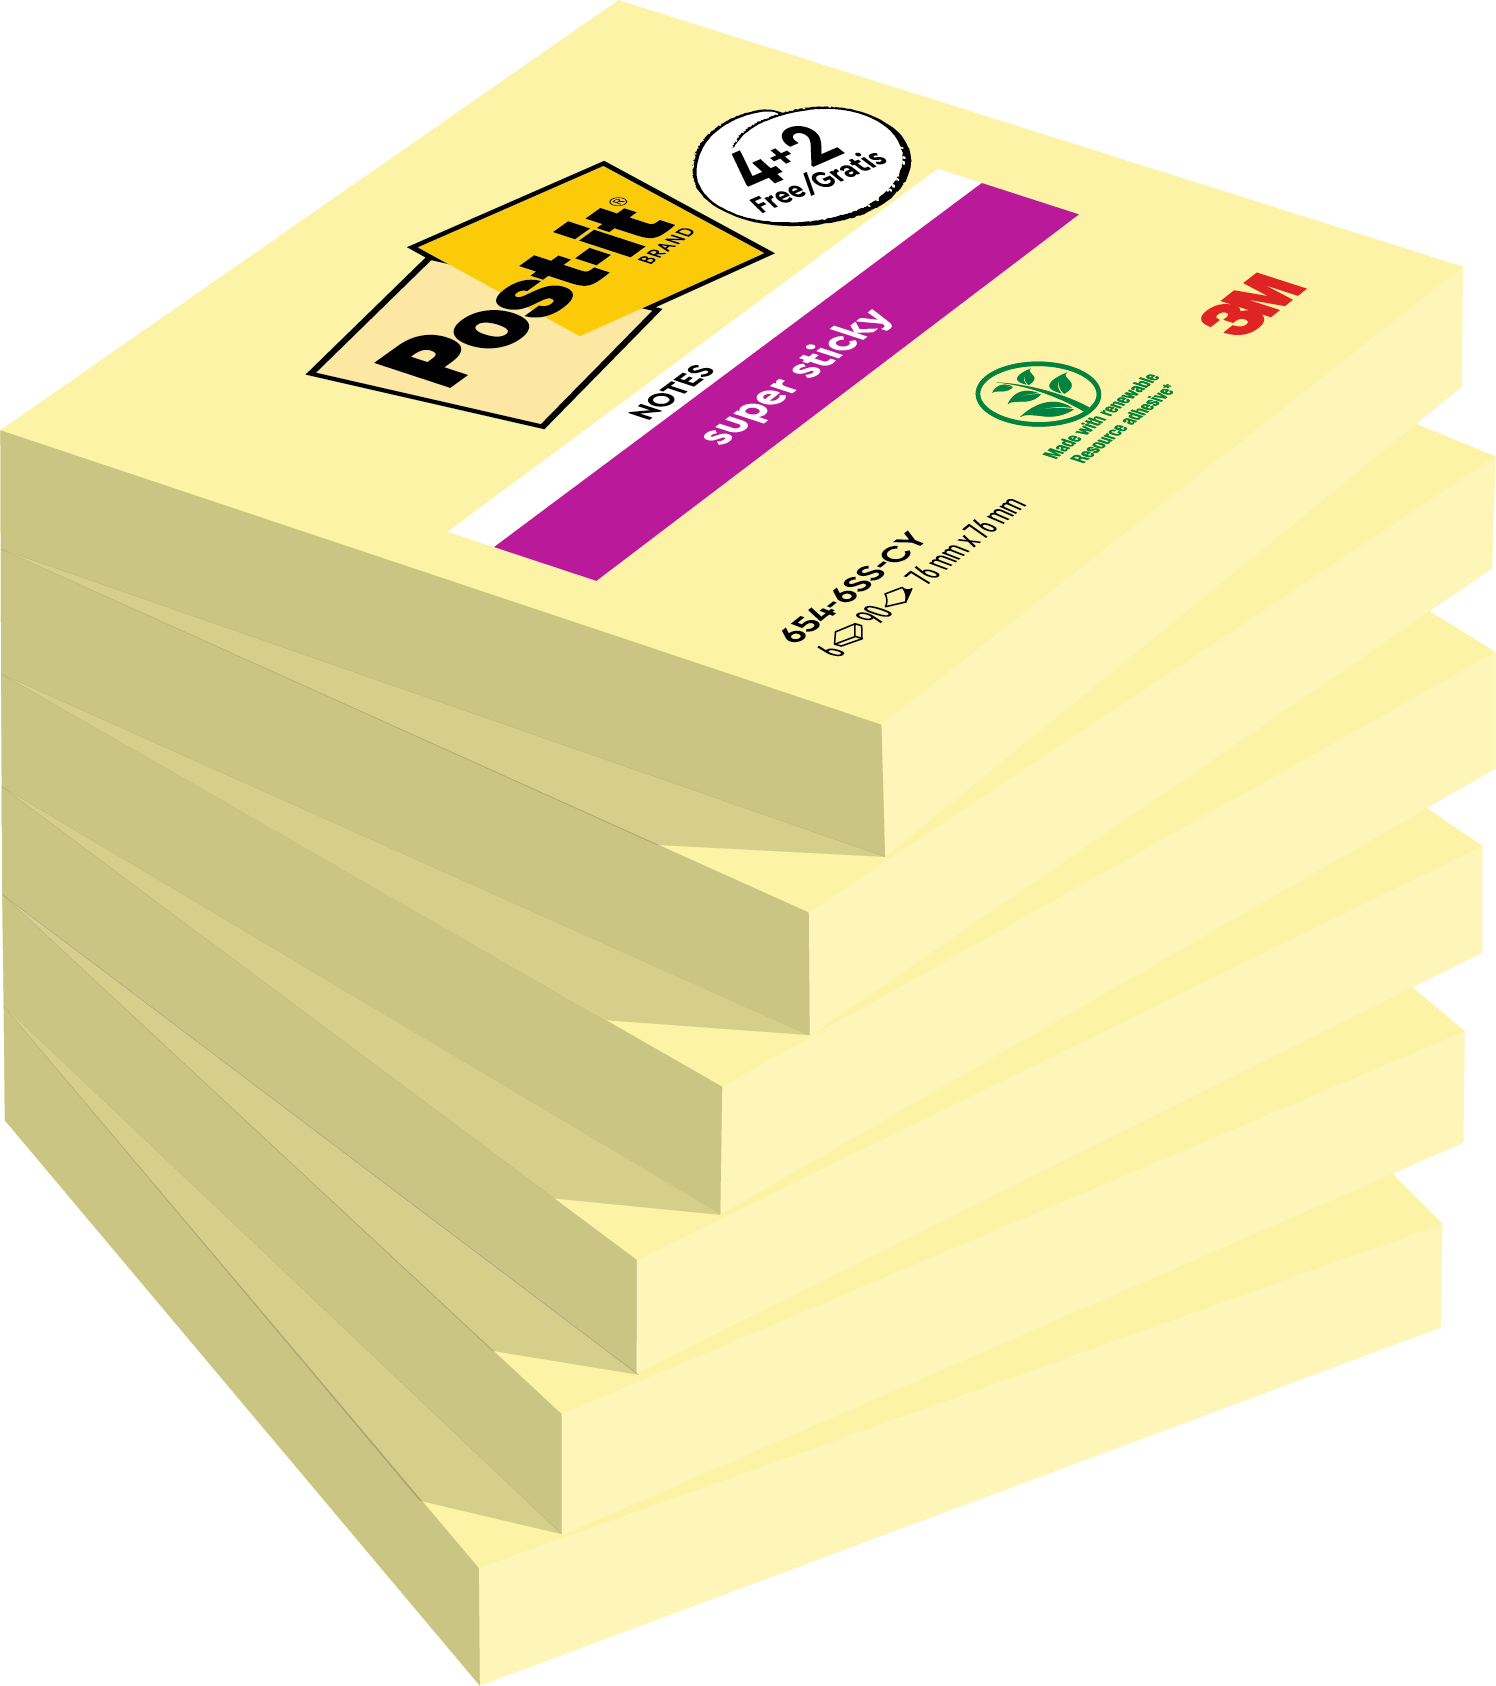 Notes Super Sticky Post-it® jaune sur carte 76 x 76 mm - Notes  repositionnables - Post-it - Carnets - Blocs notes - Répertoires